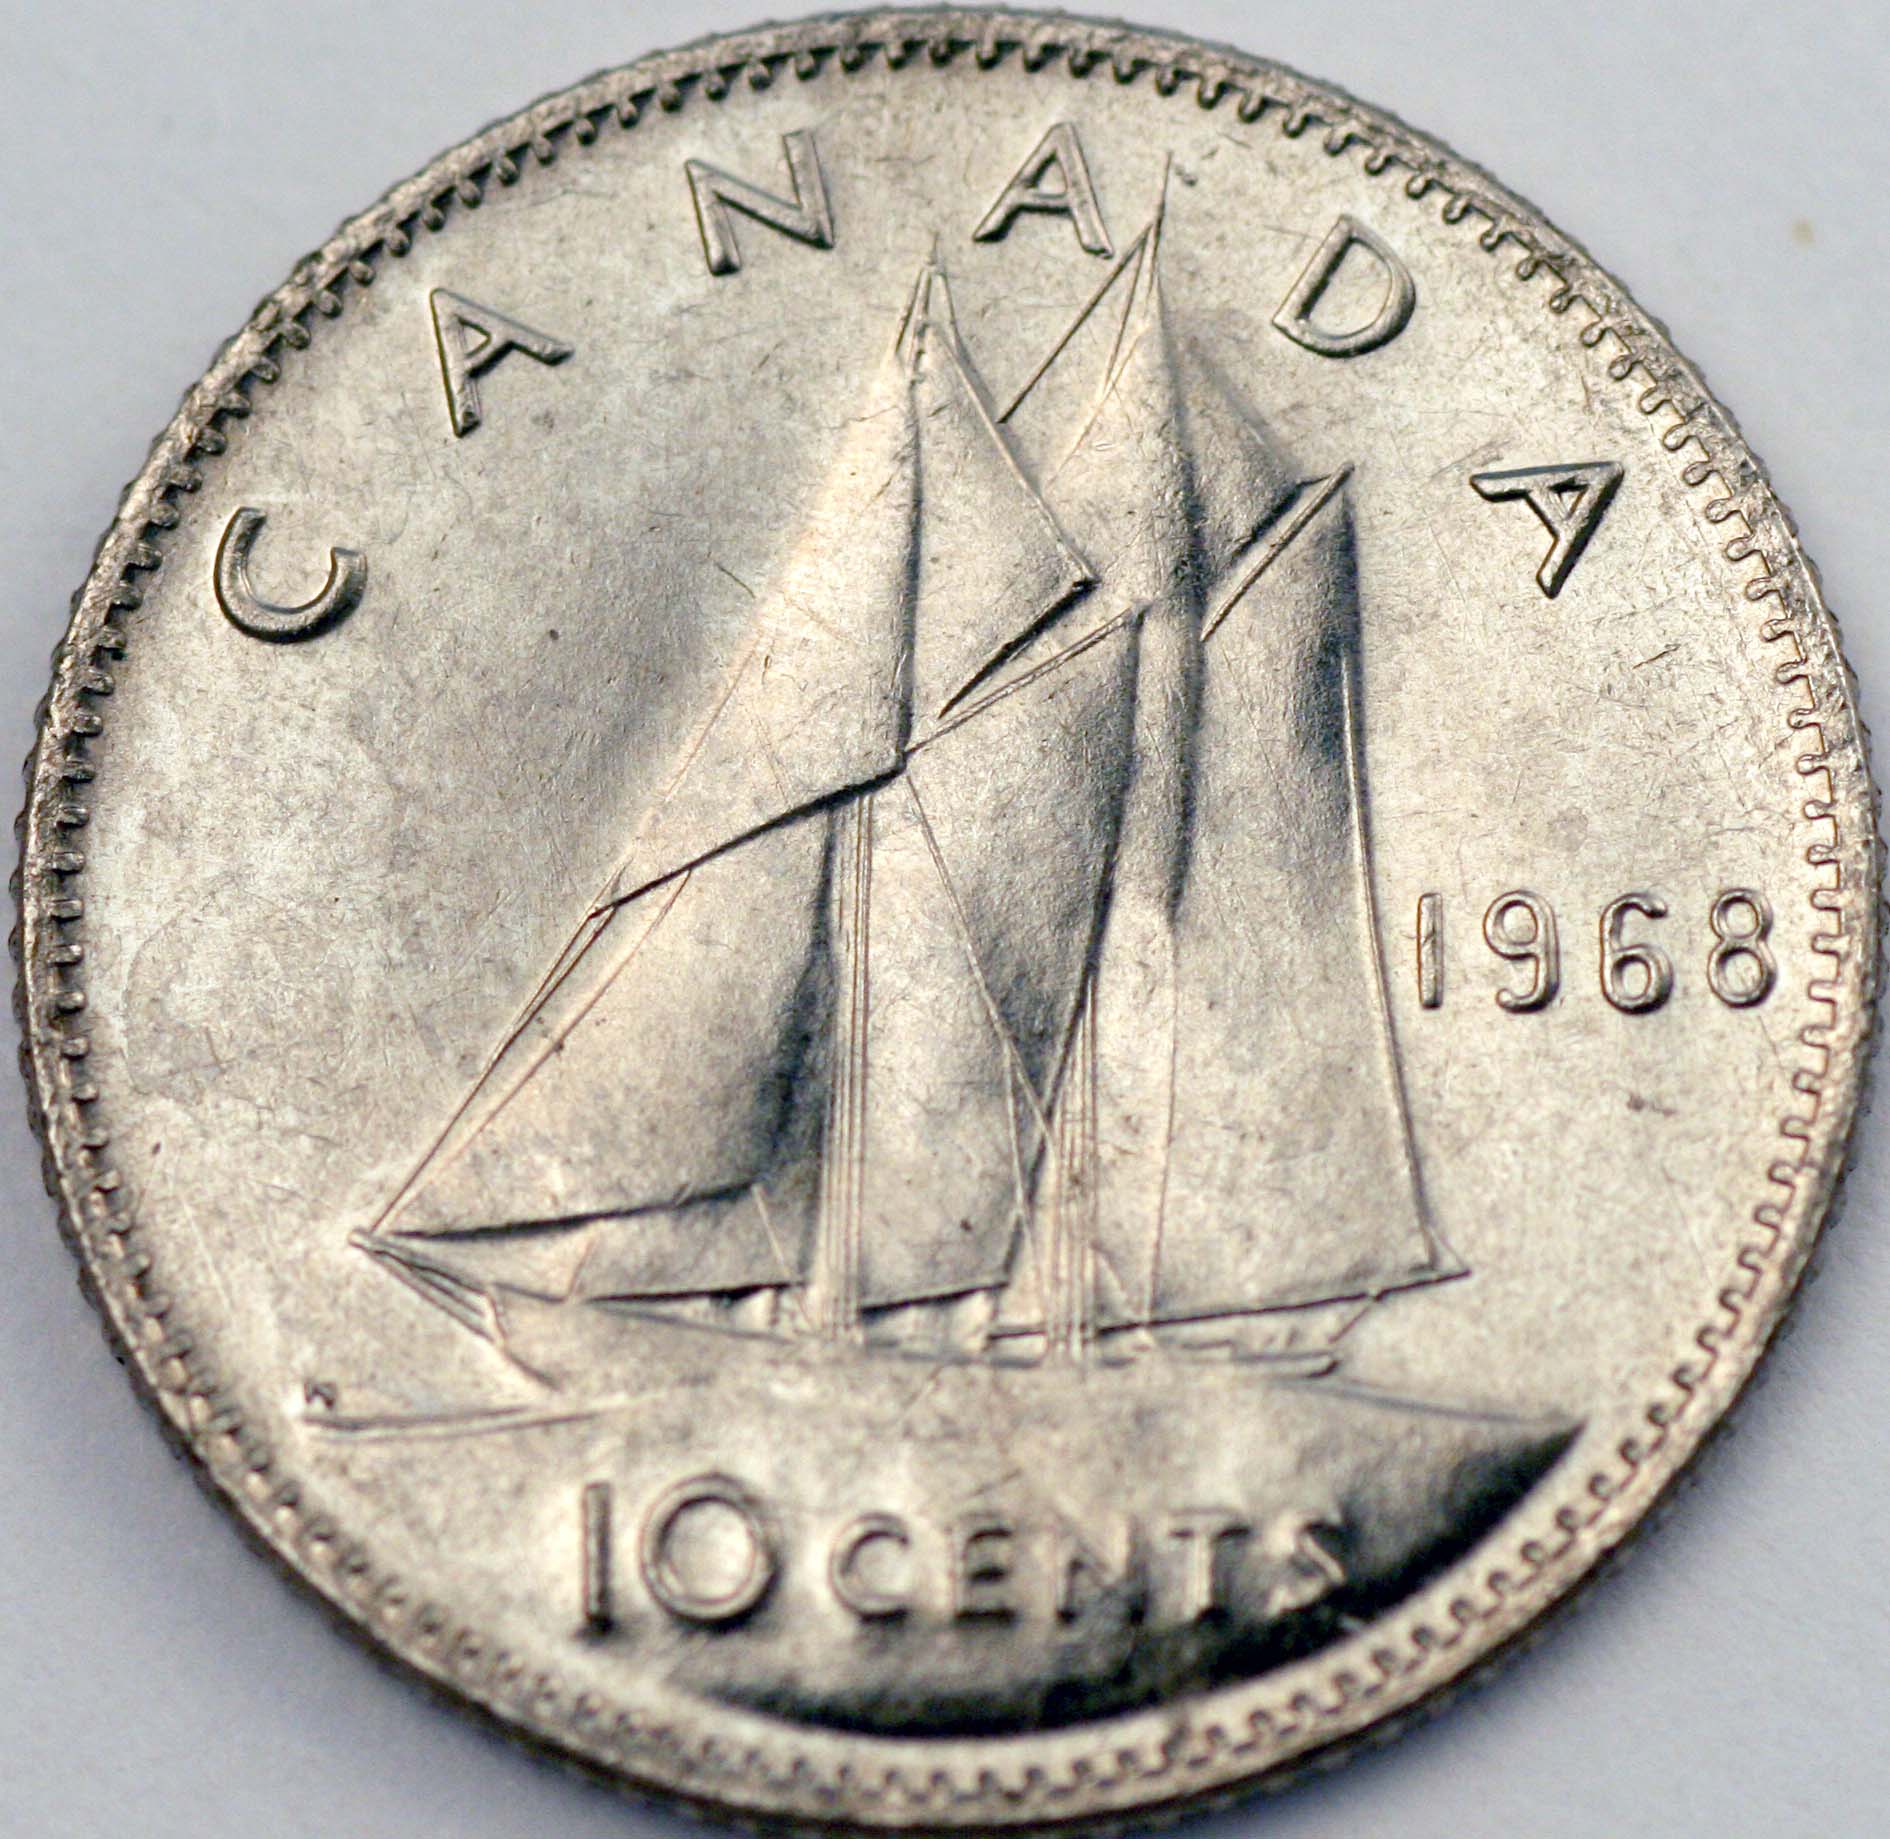 1968 10 Cents USA Struck 6514 Reverse